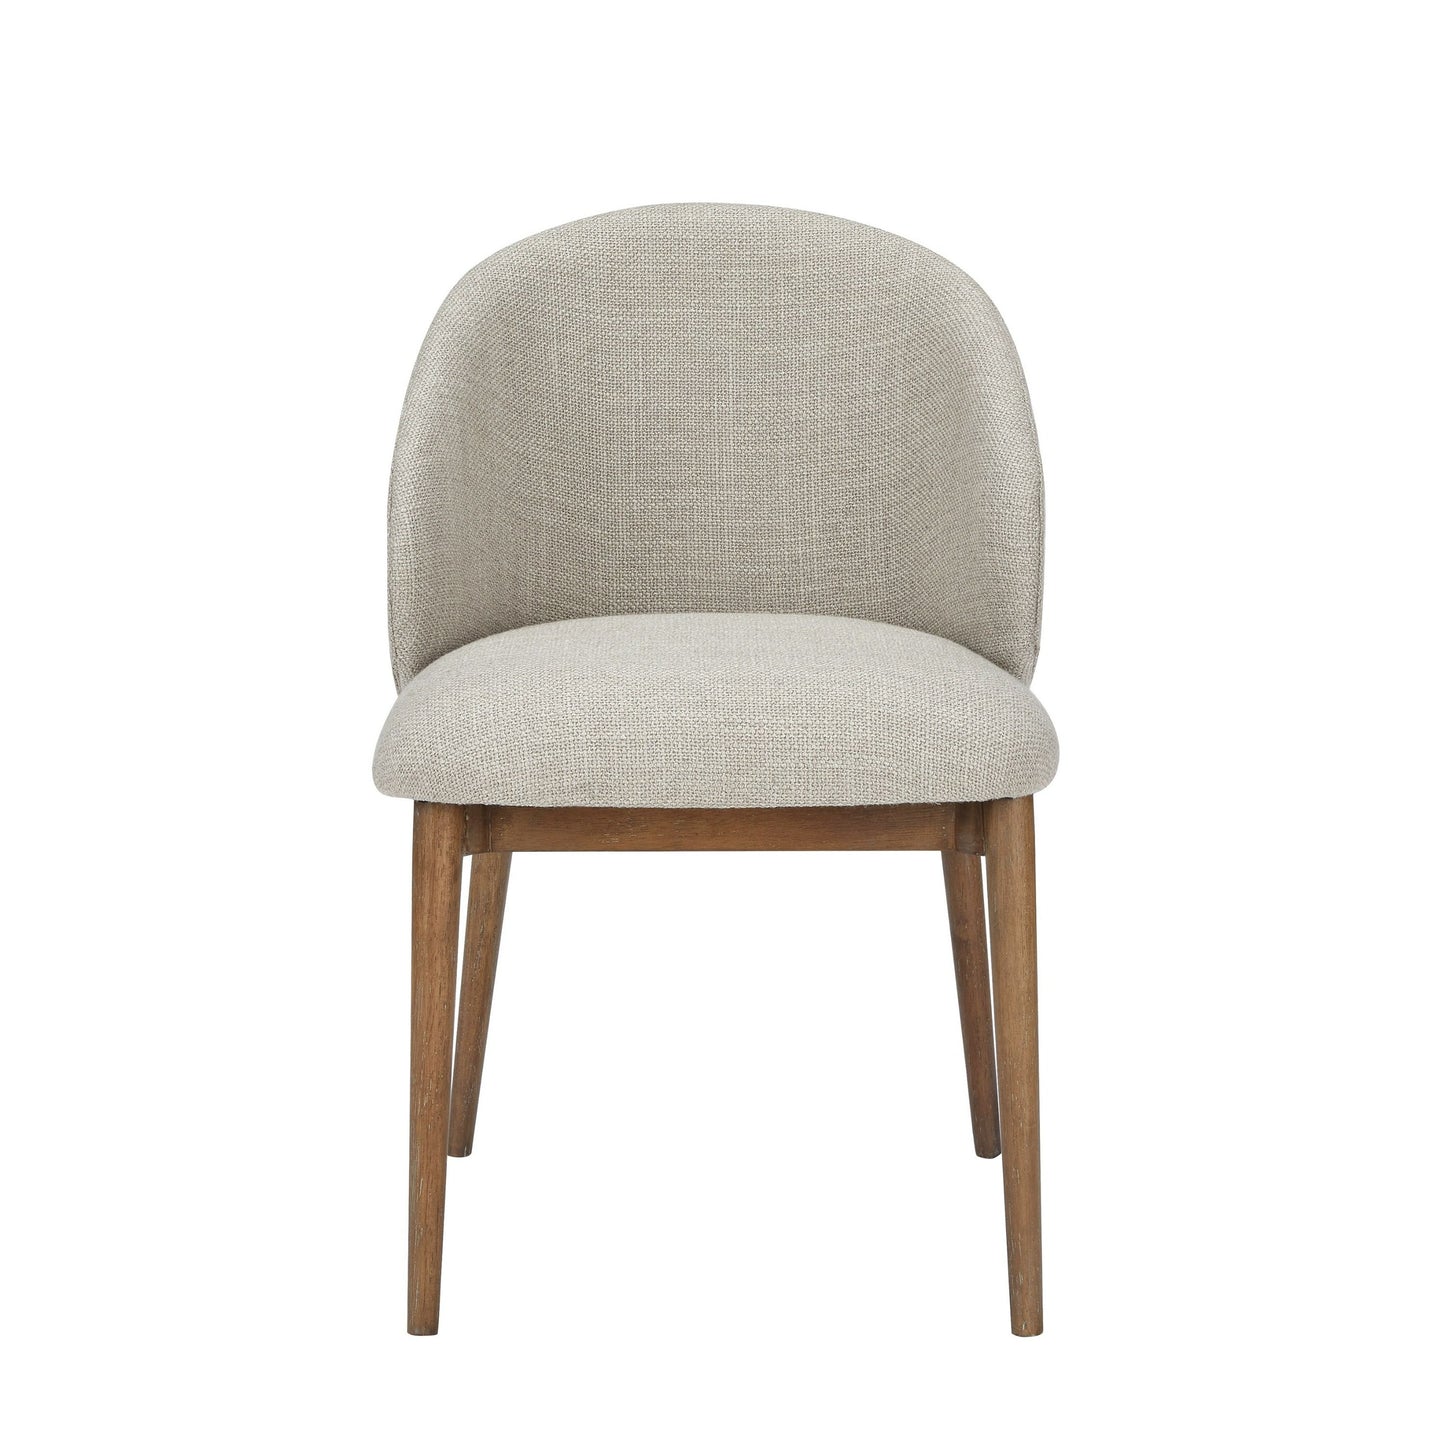 Modrest Blum - Modern Beige Linen Dining Chair